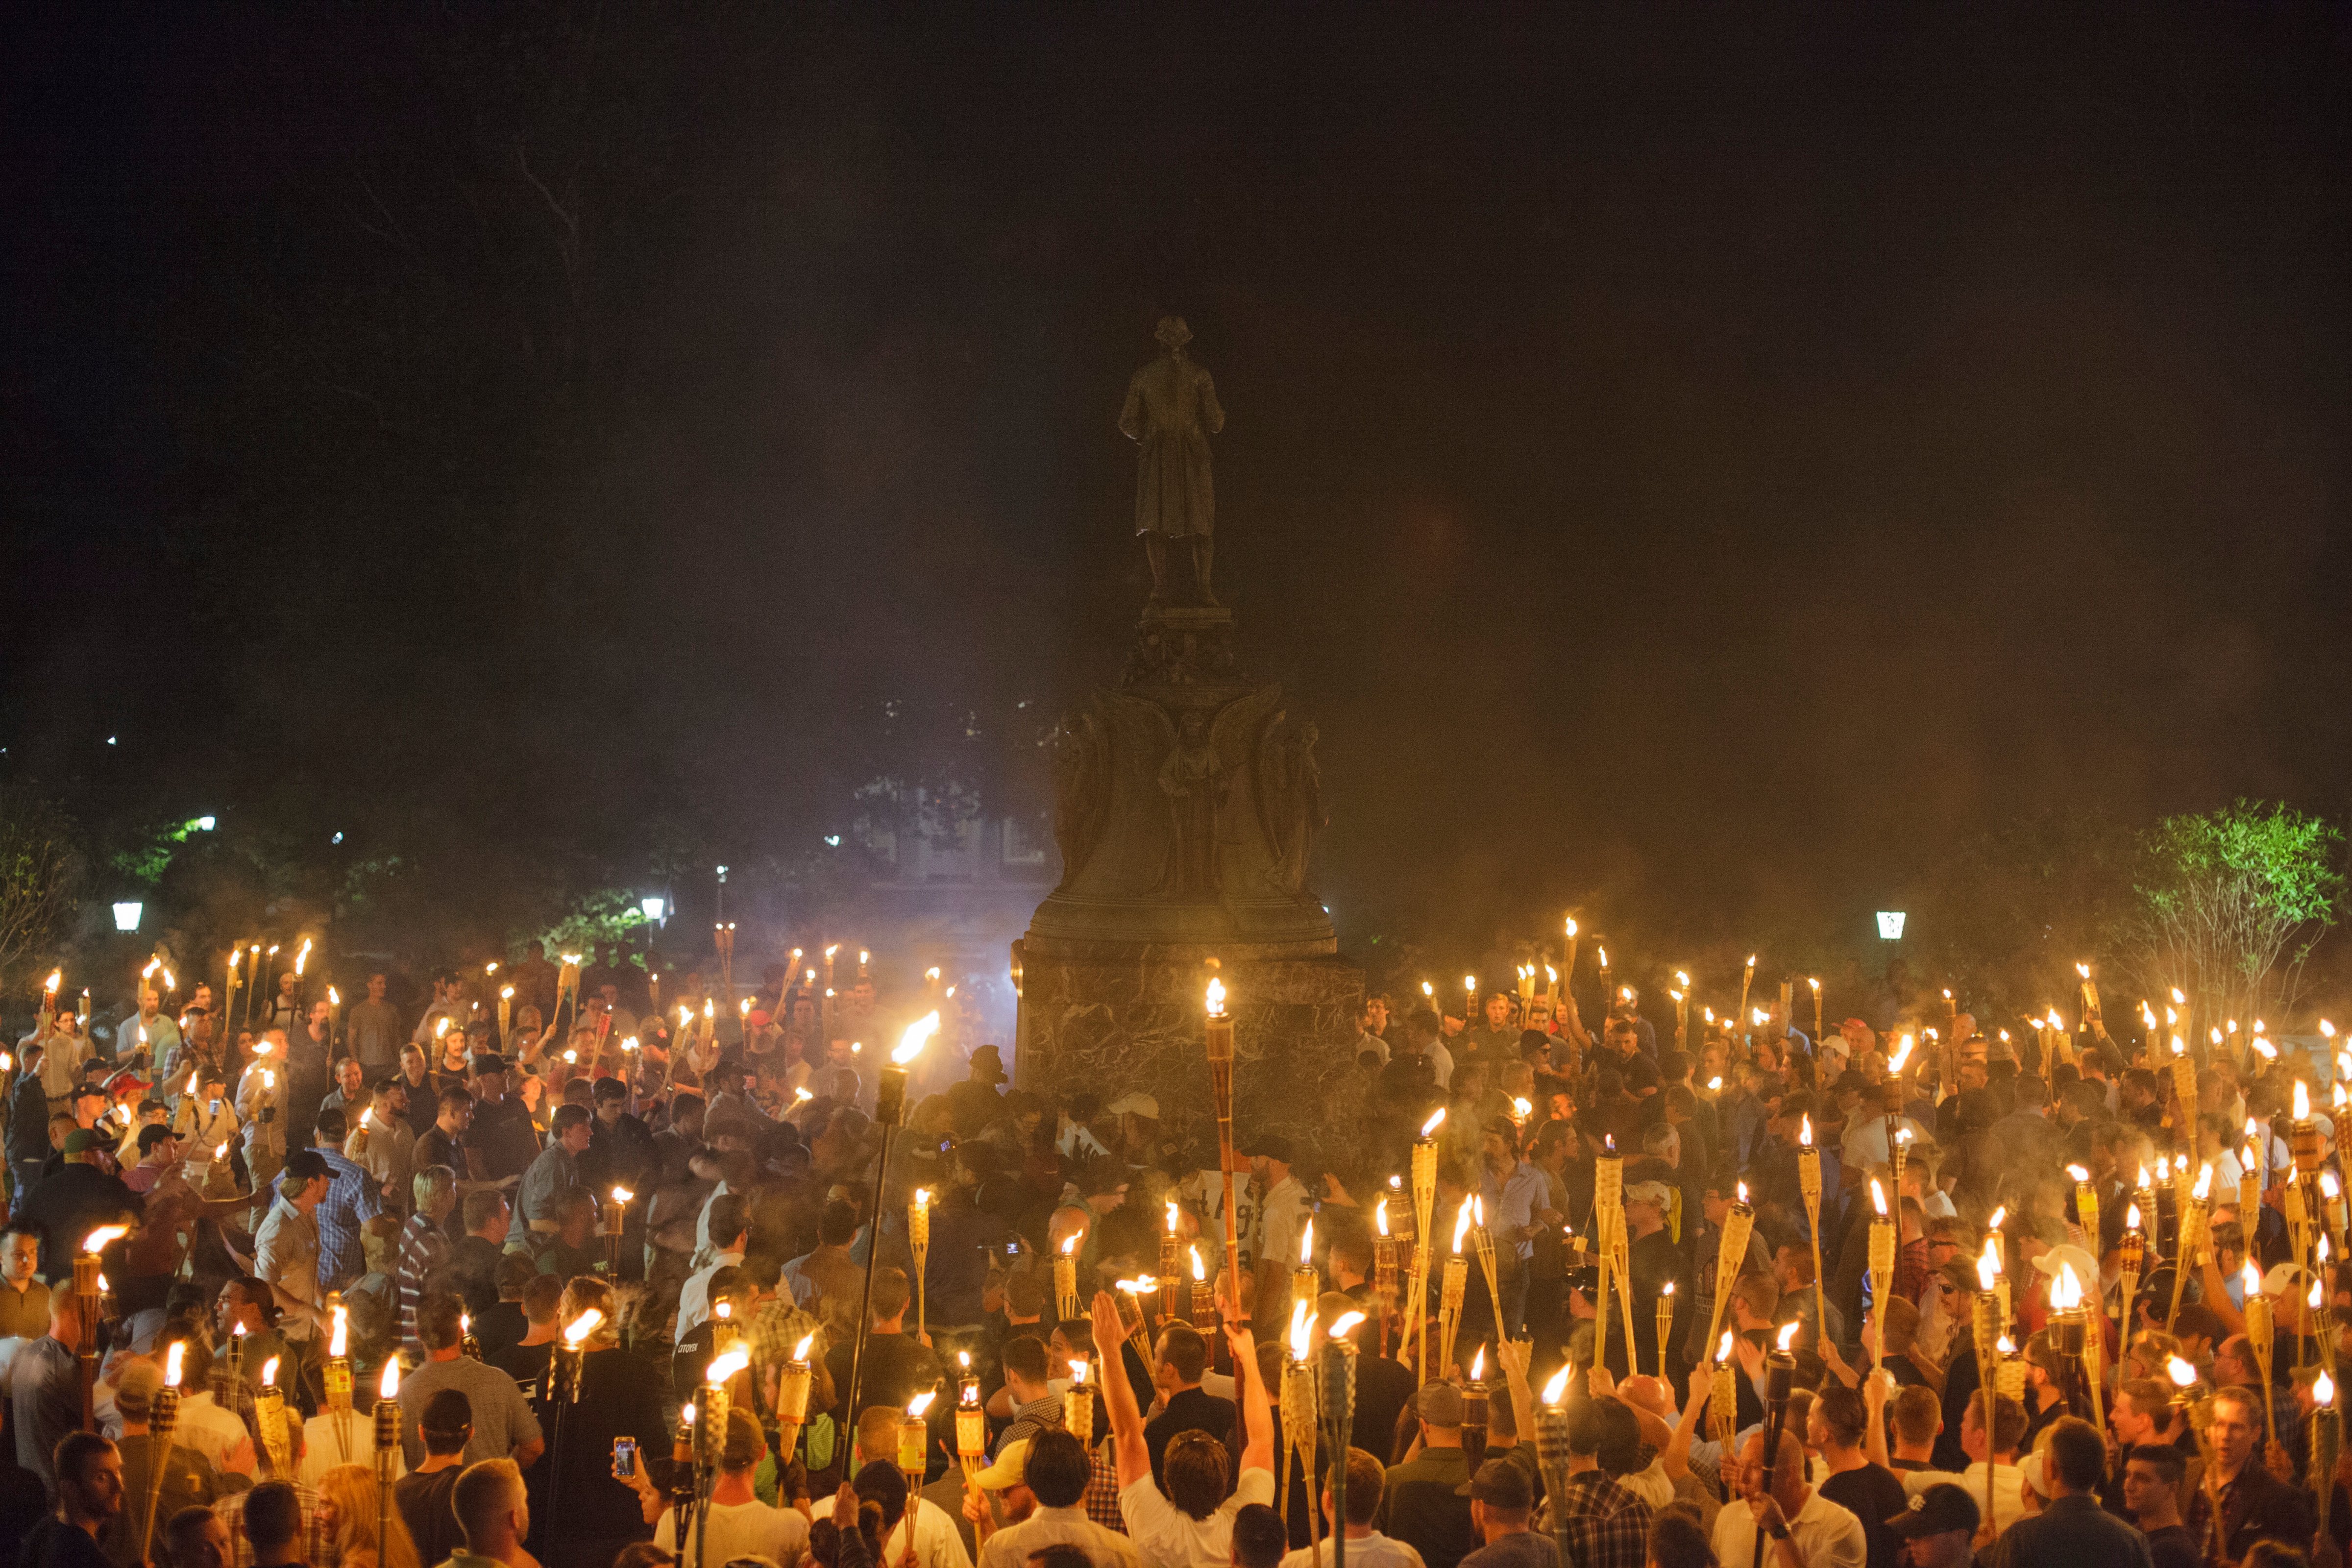 VA: Alt Right, Neo Nazis Hold Torch Rally at UVA